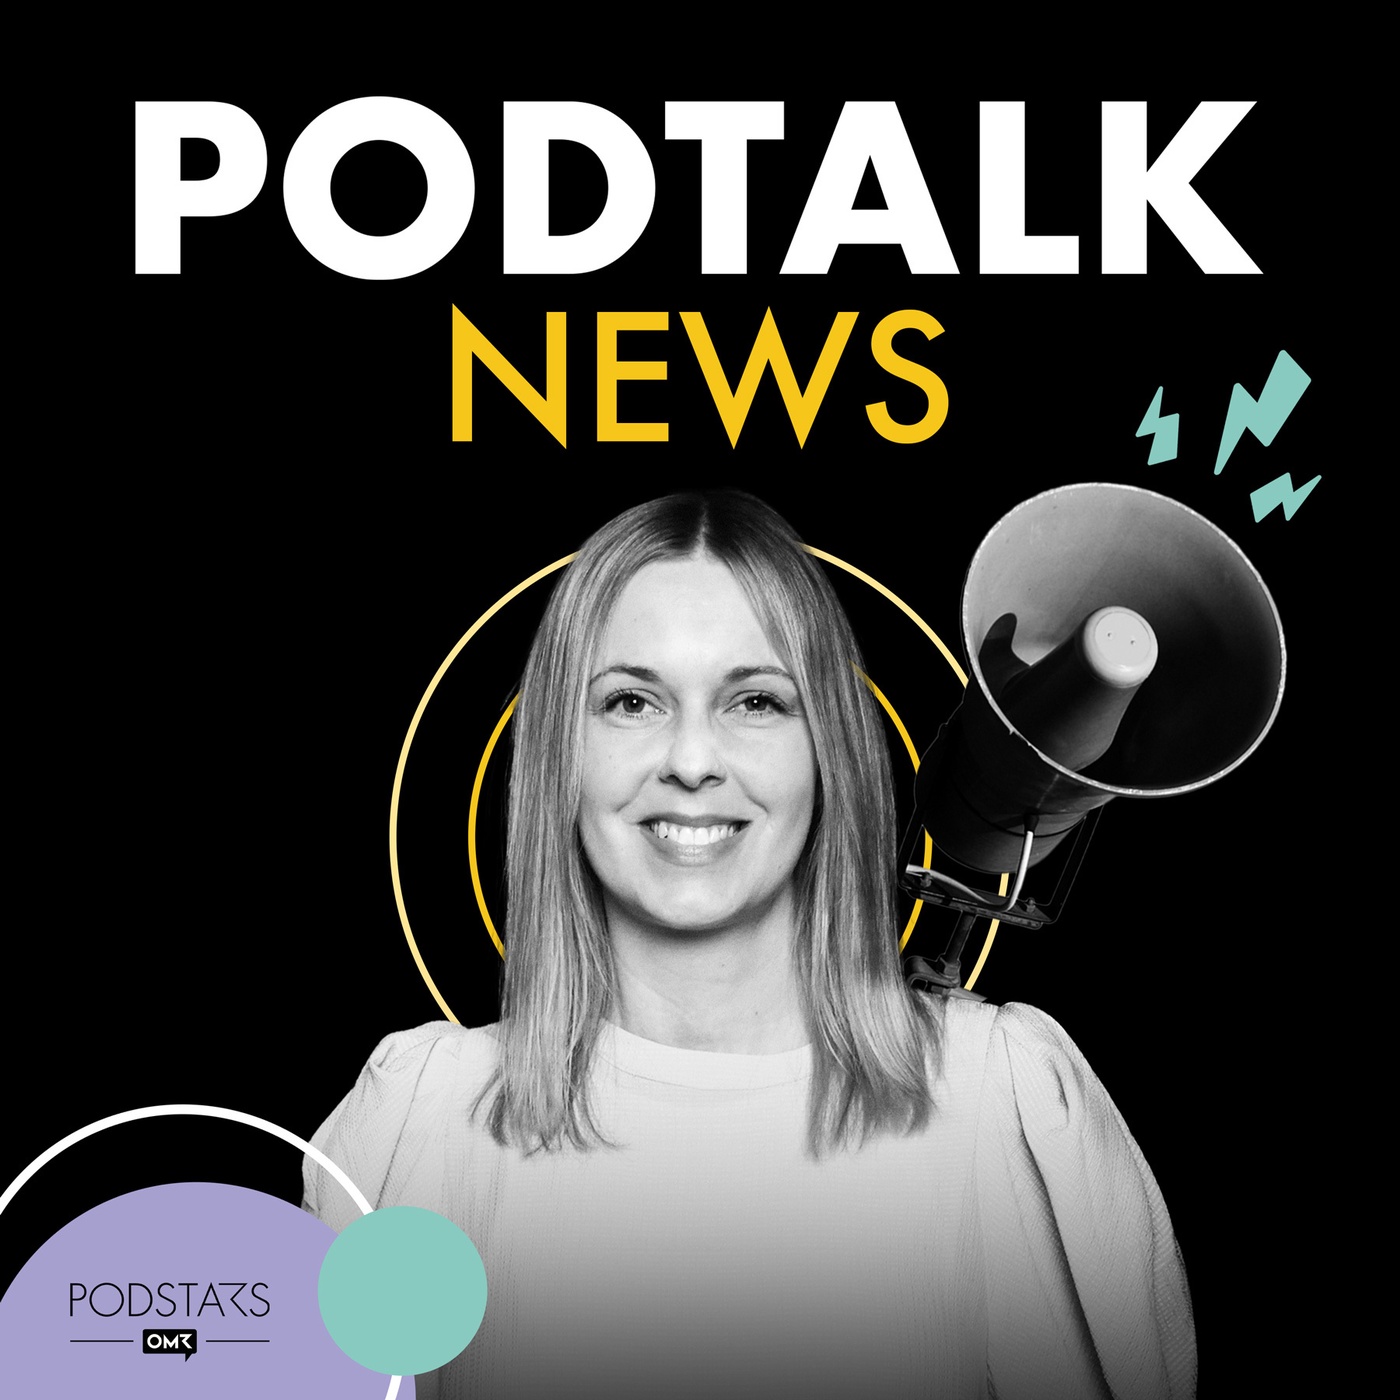 PodTalk News: Neue Studien zu »Podheads«, Gen Z und Massenkommunikations-Trends